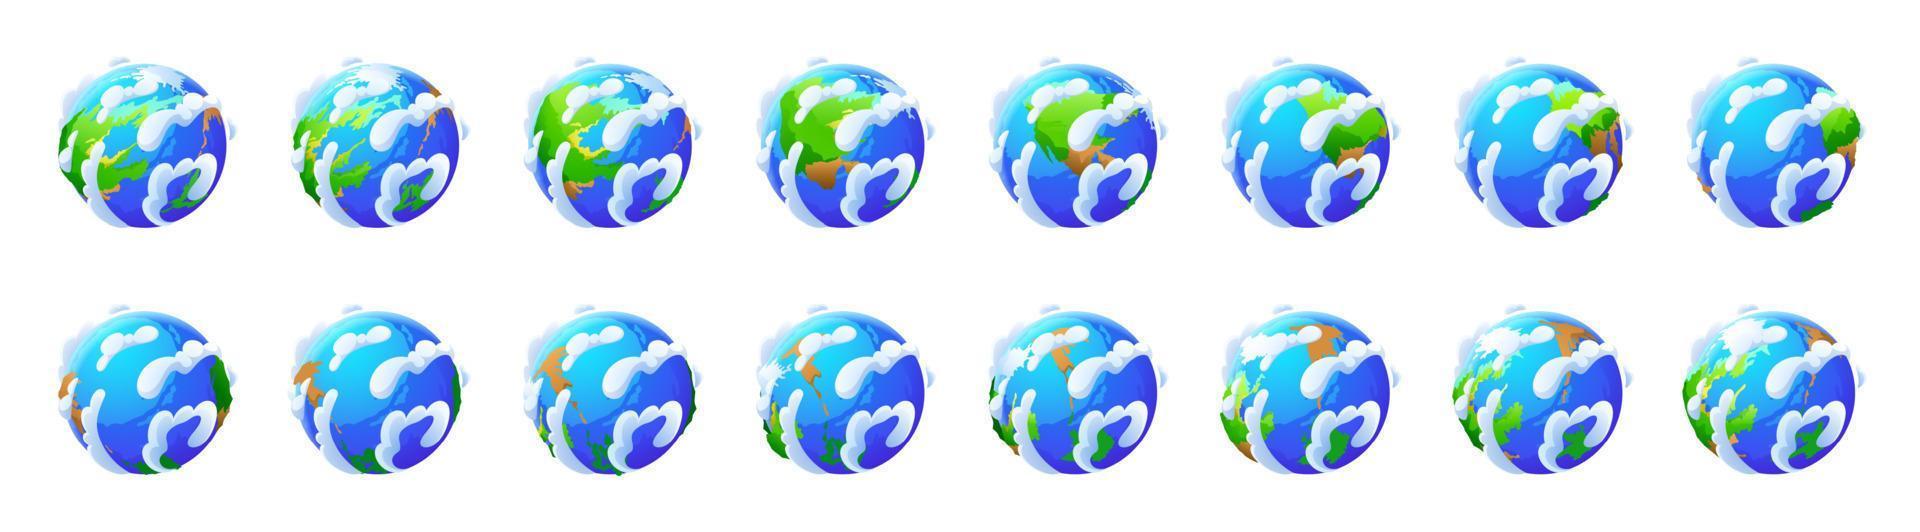 aarde wereldbol rotatie. pictogrammen van wereld, planeet vector